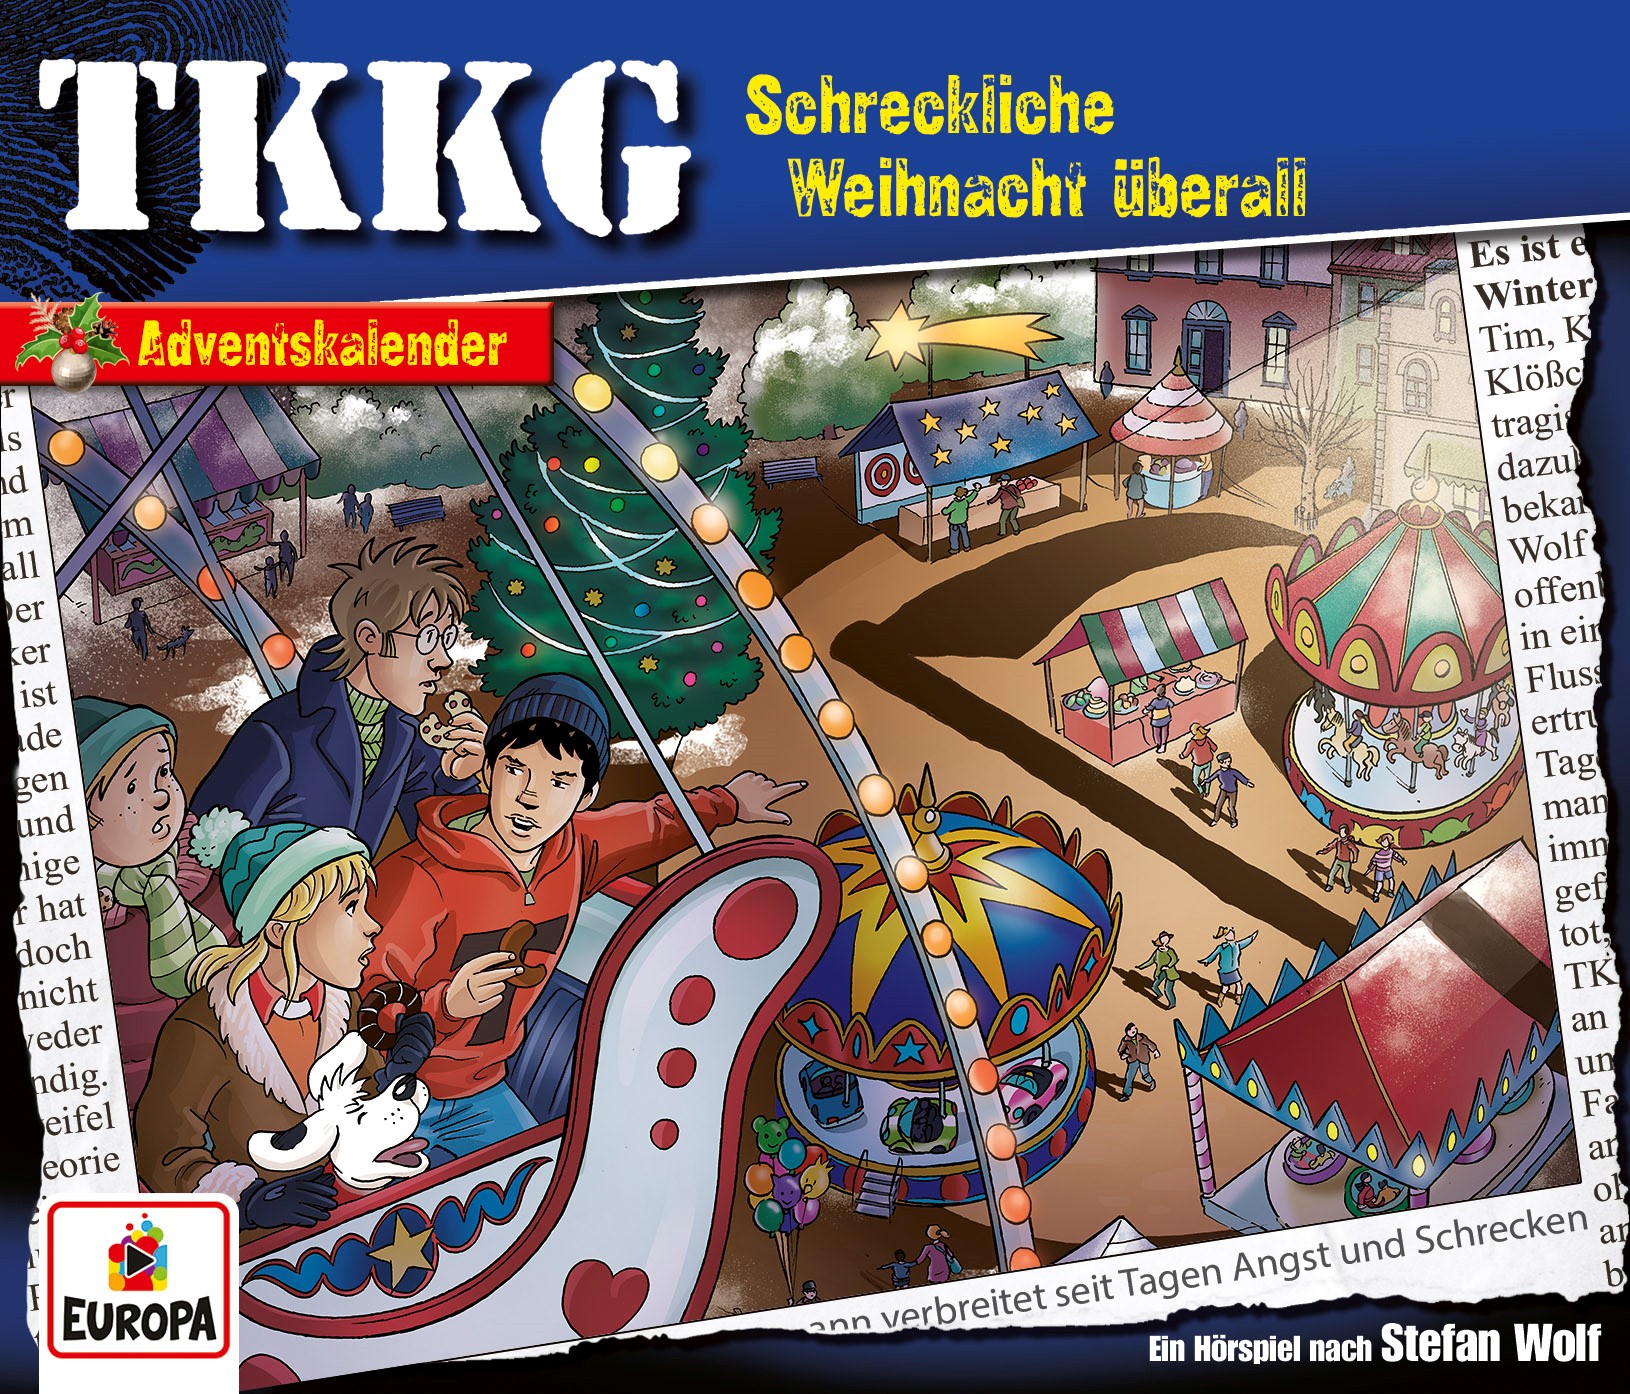 TKKG Hörspiel, Folge 221: Schreckliche Weihnacht überall (Adventskalender)